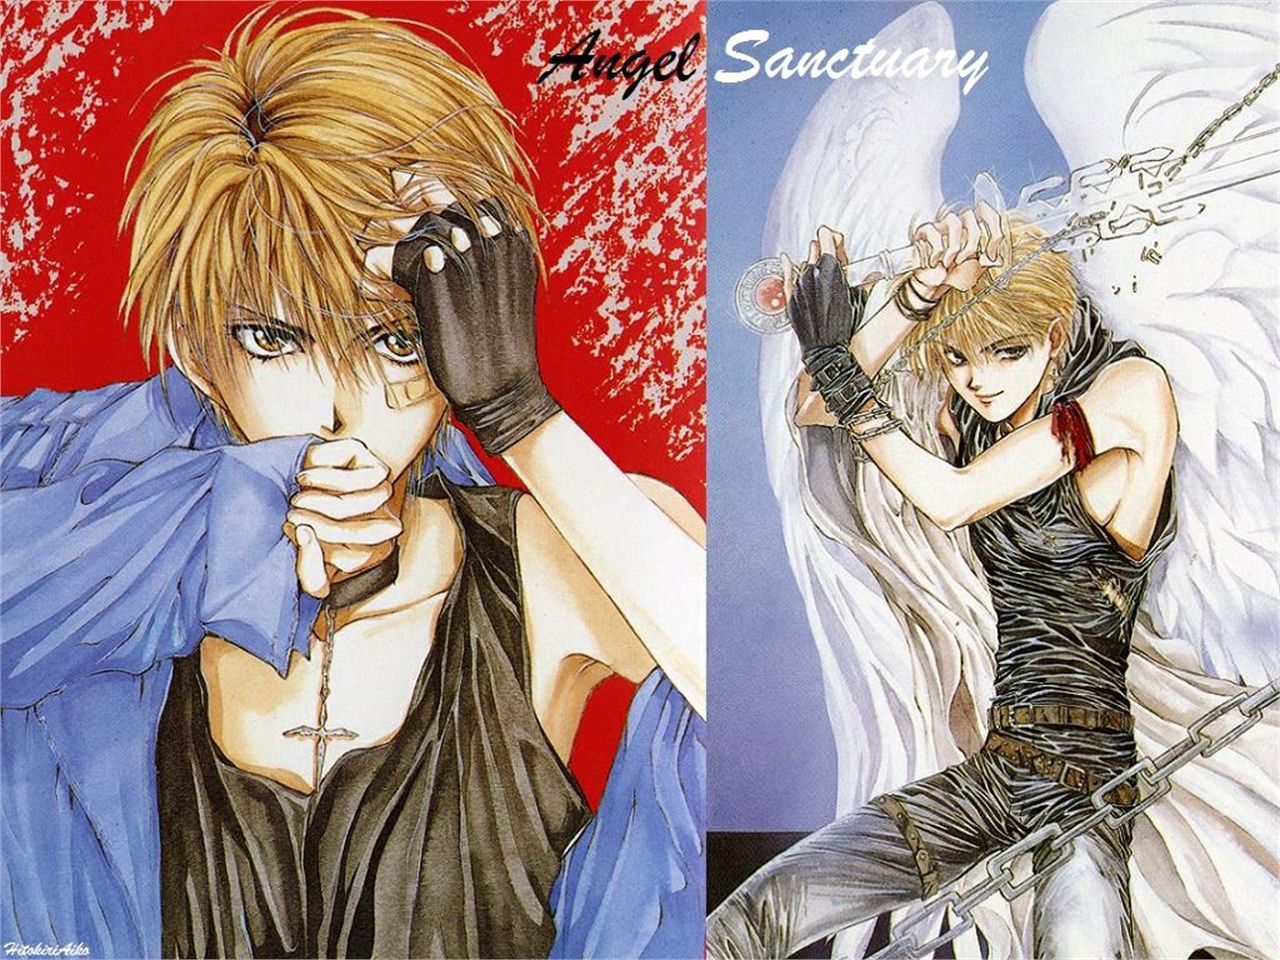 1996] Sanctuary OVA [ENG SUB] [VOSTFR] - YouTube